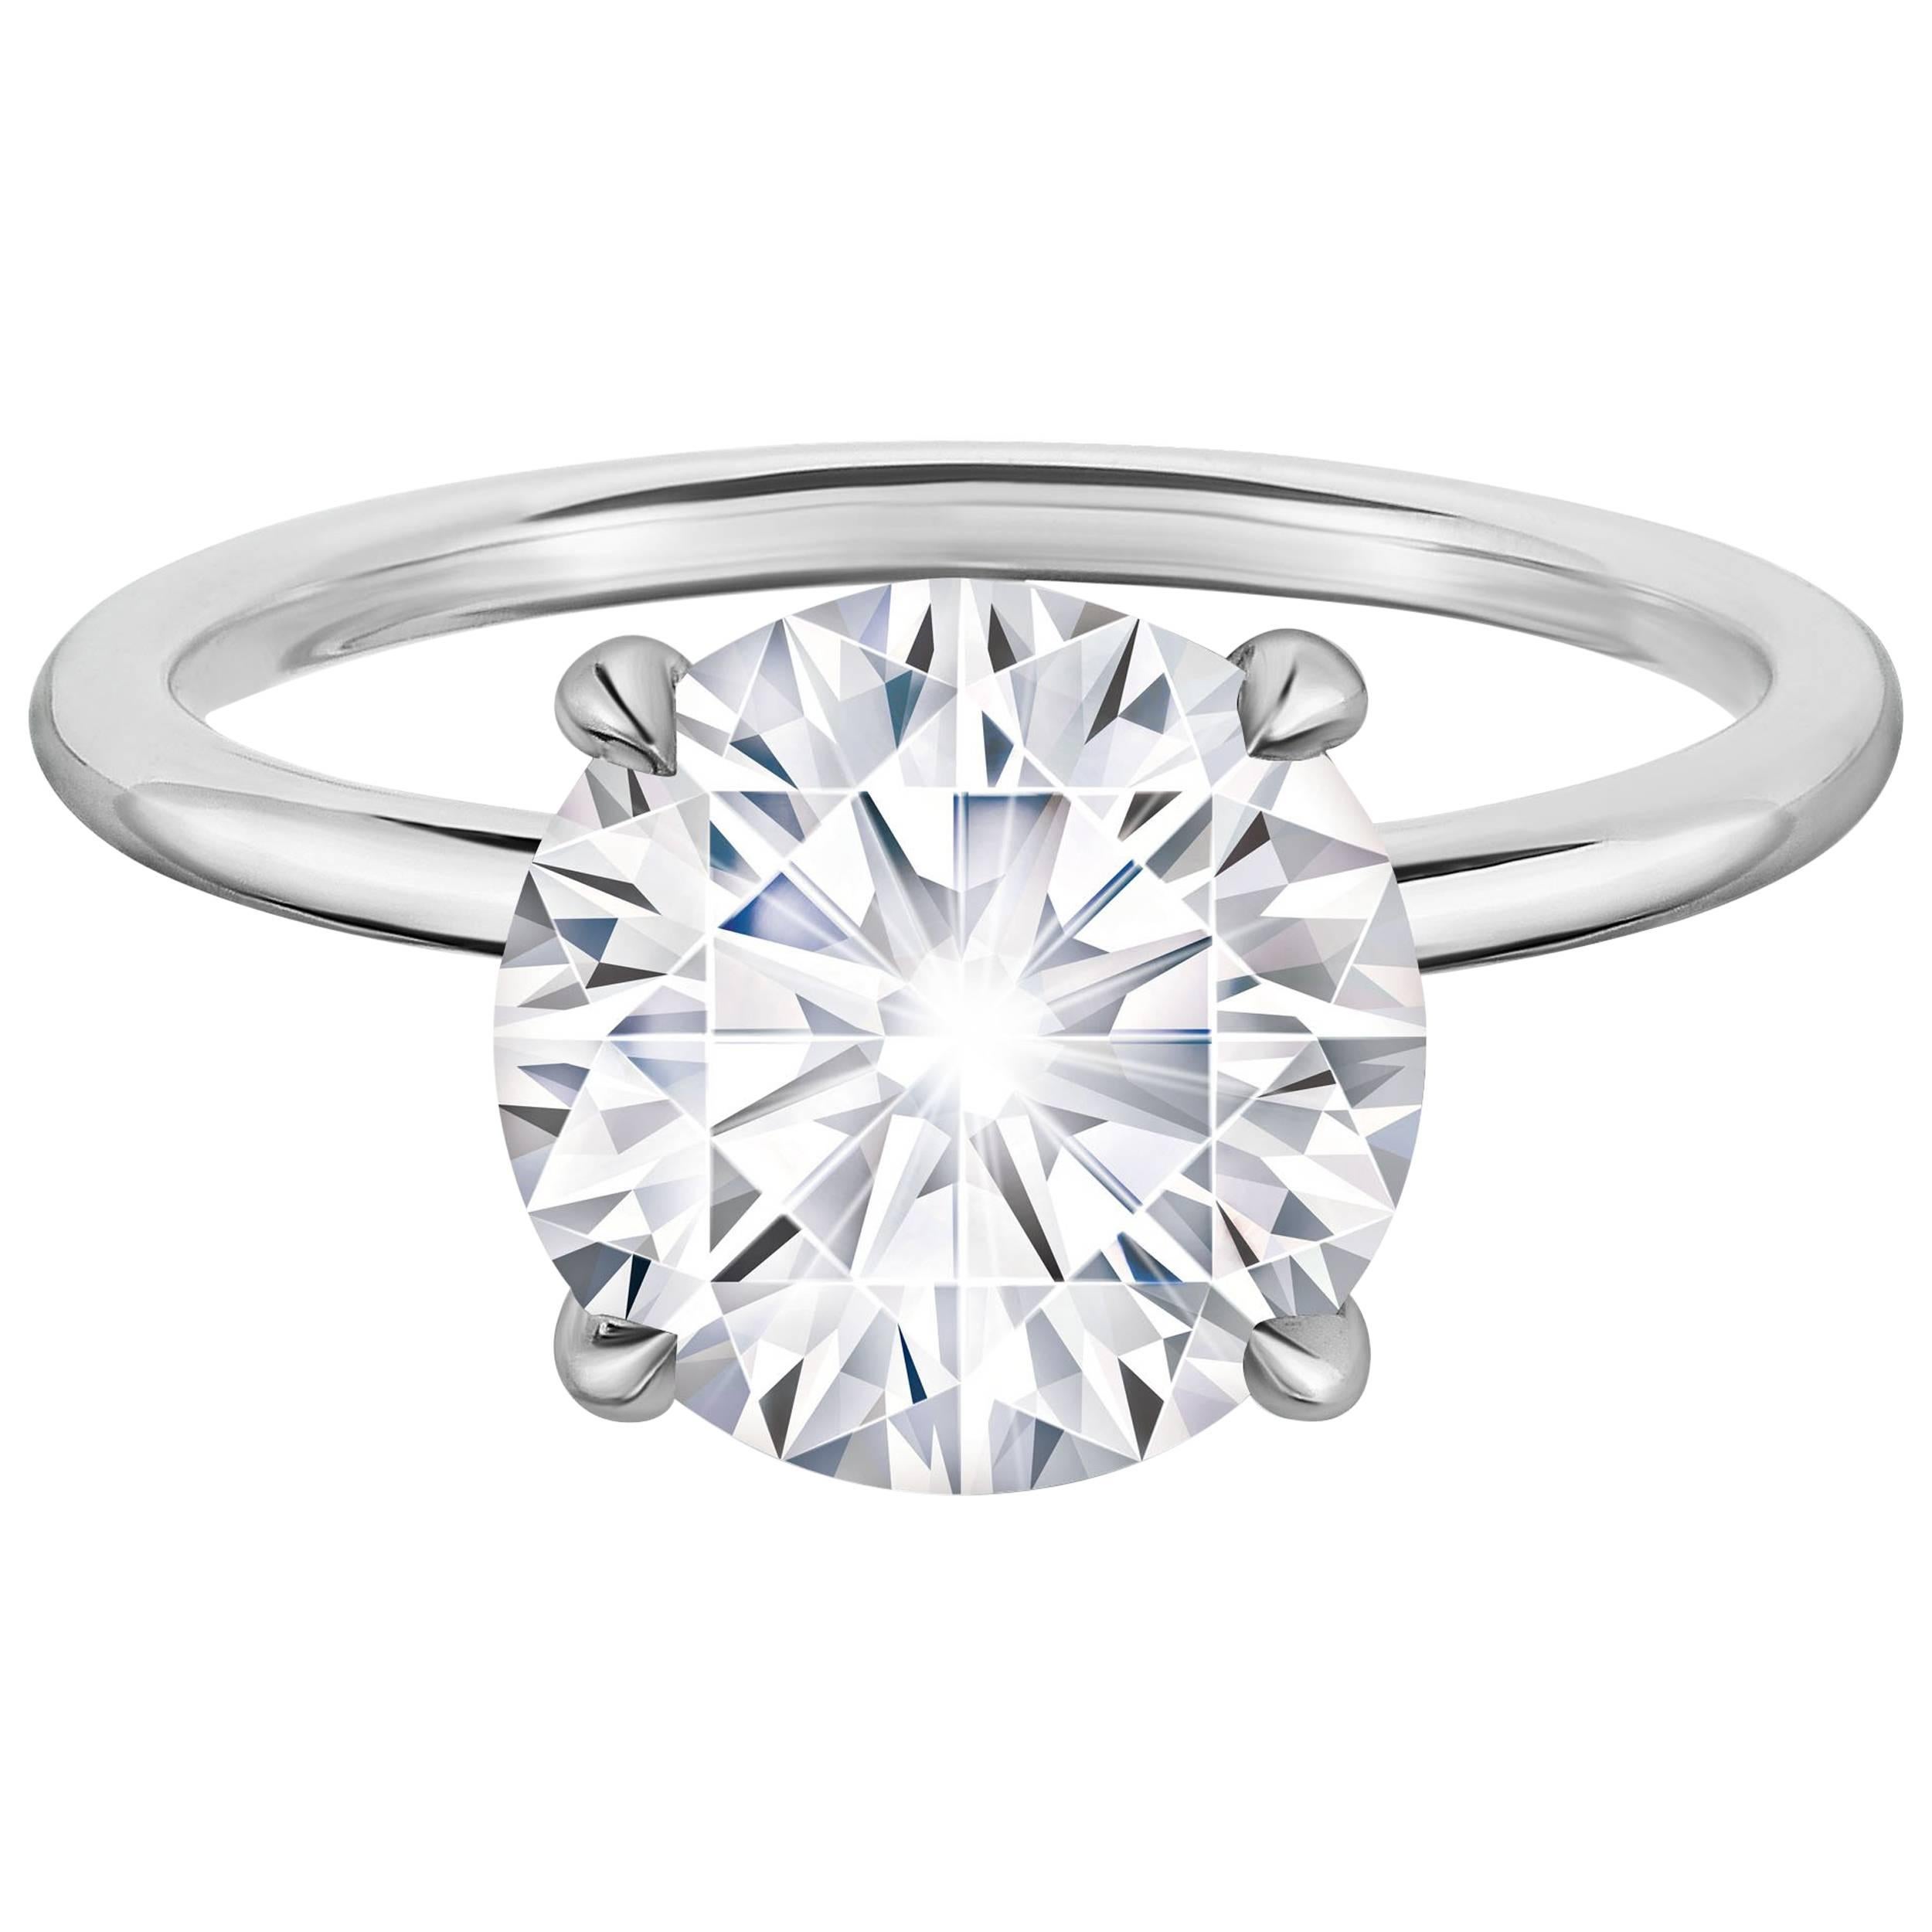 Marisa Perry 3.06 Carat Round Solitaire Diamond Engagement Ring in Platinum